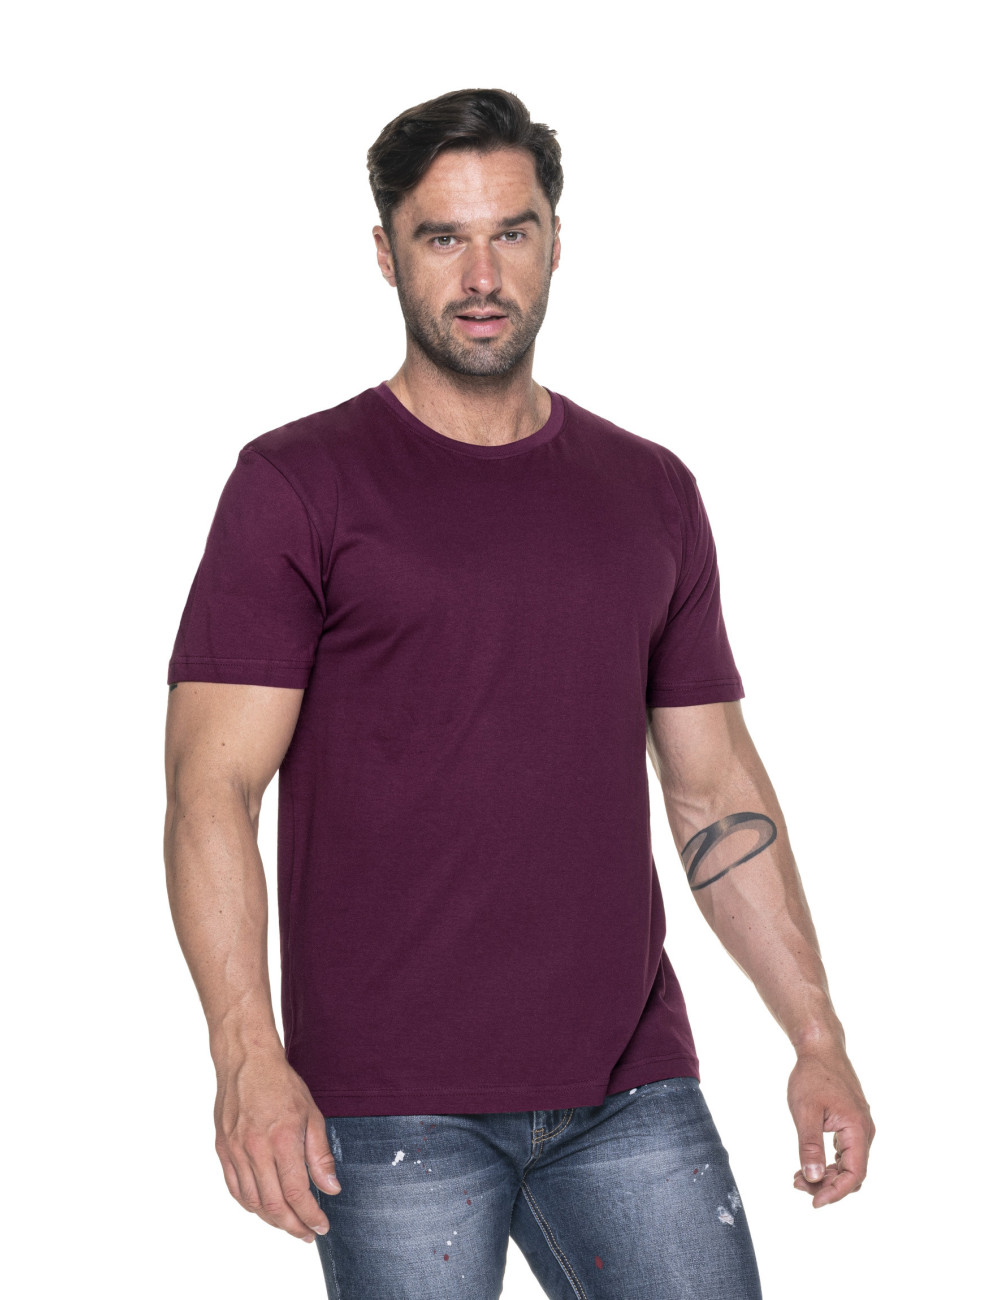 Heavy slim t-shirt burgundy Promostars